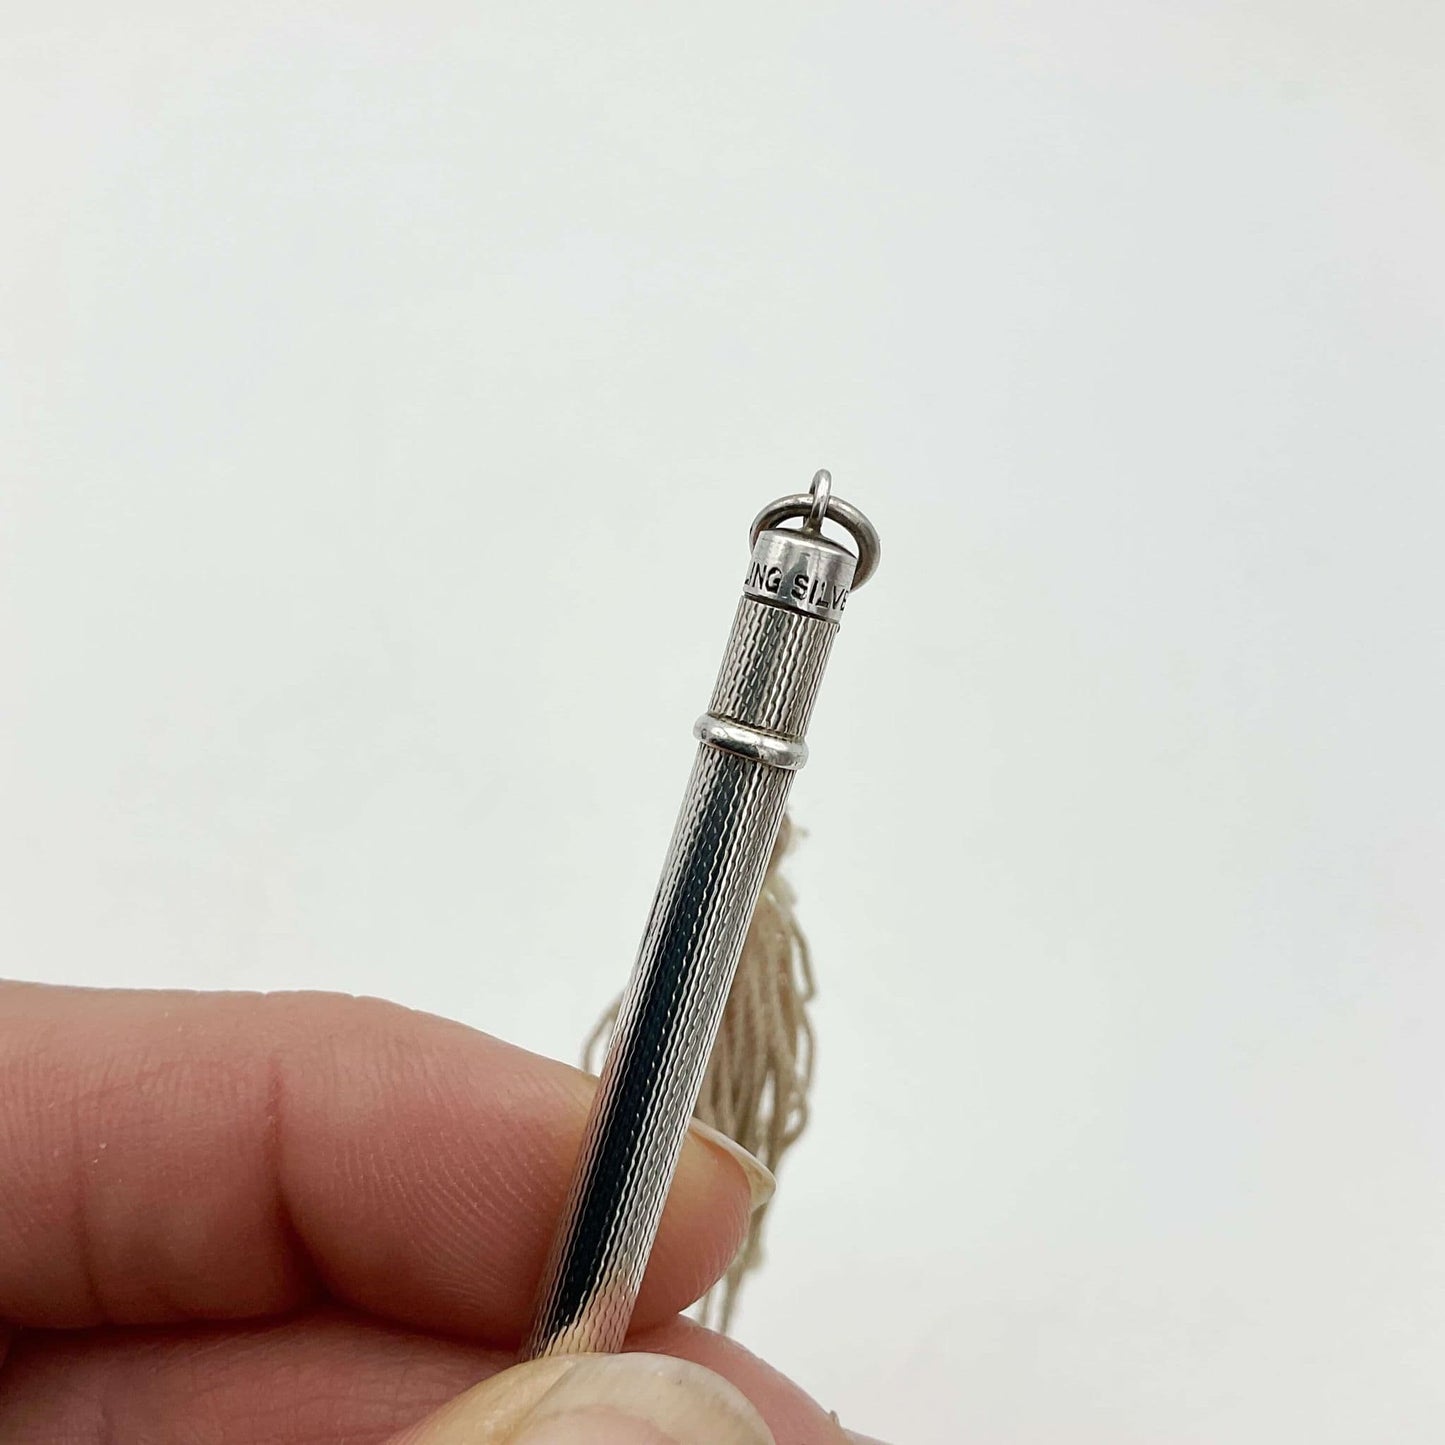 Vintage Sterling Silver Propelling Pencil, Bridge Pencil